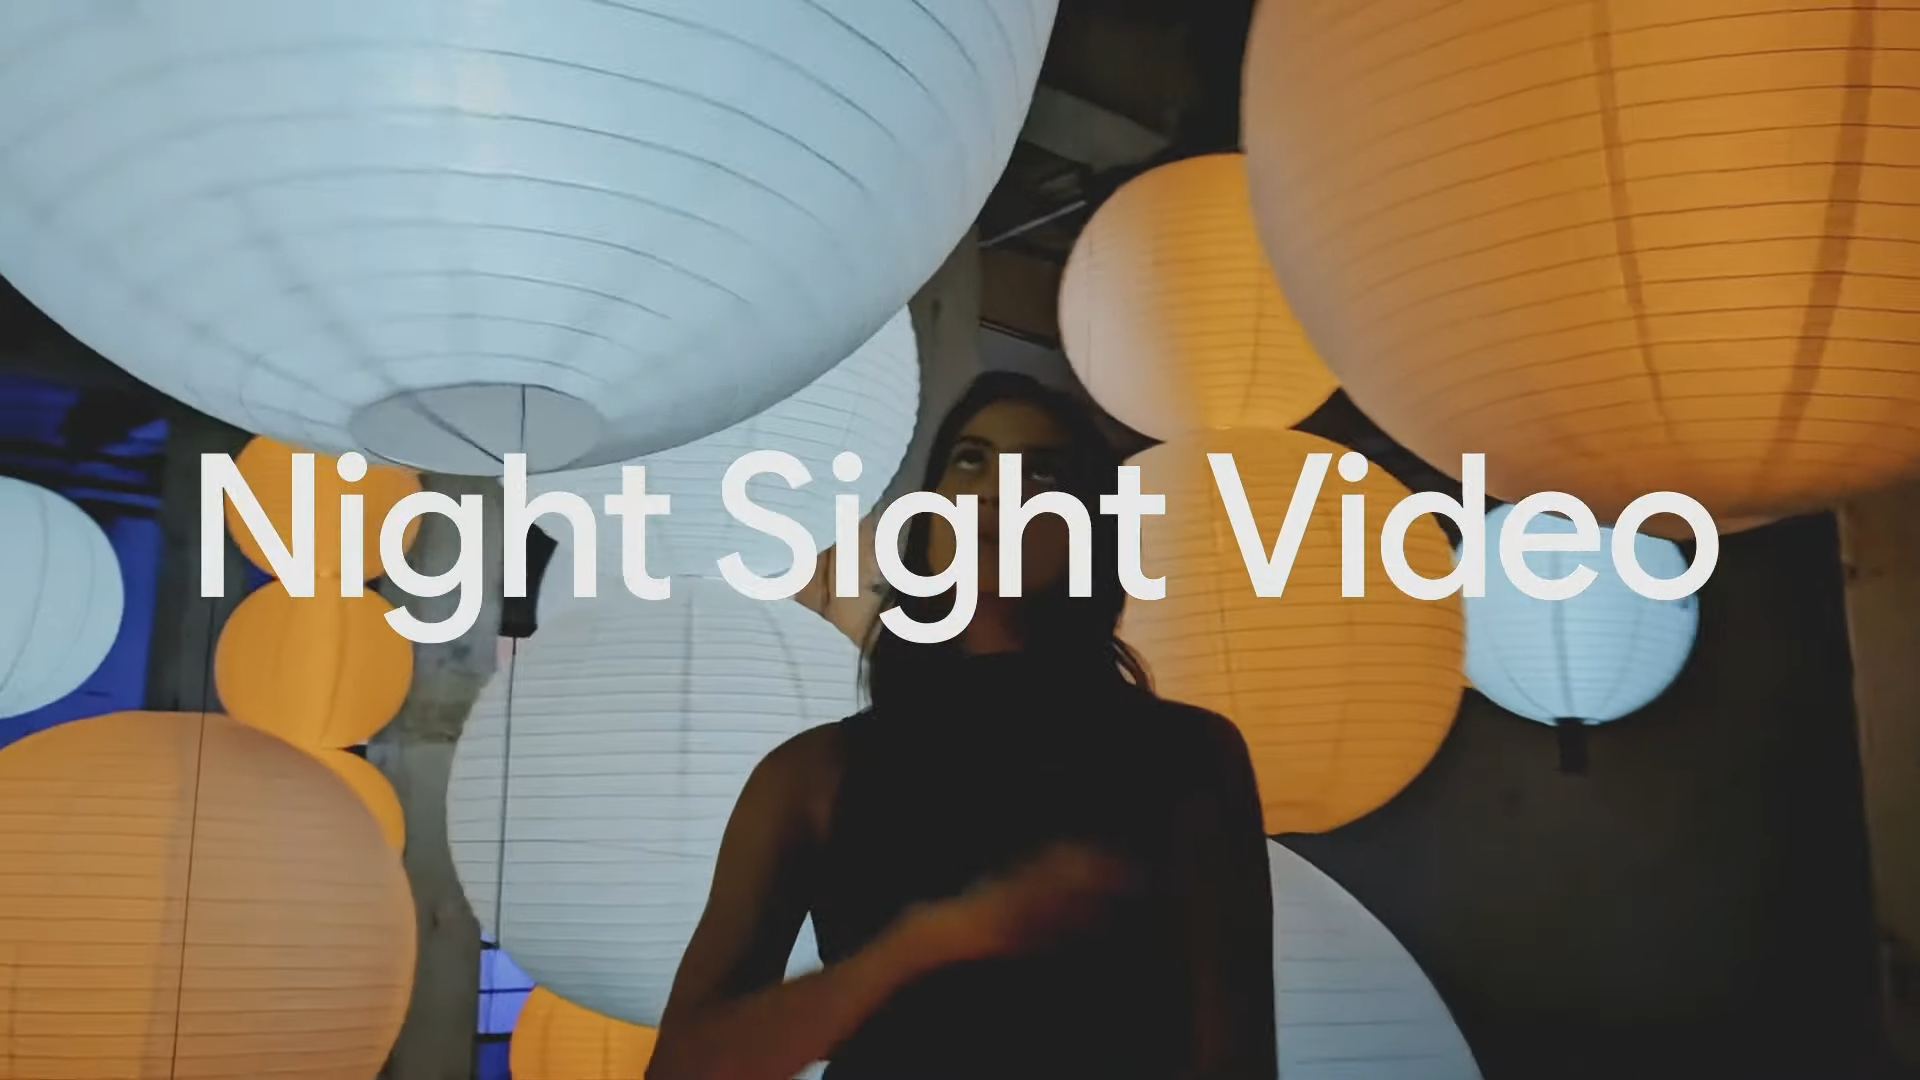 Le Pixel 8 Pro passe à la vidéo Night Sight dans le cadre de la nouvelle suite de fonctions de caméra améliorées par l'IA de Google